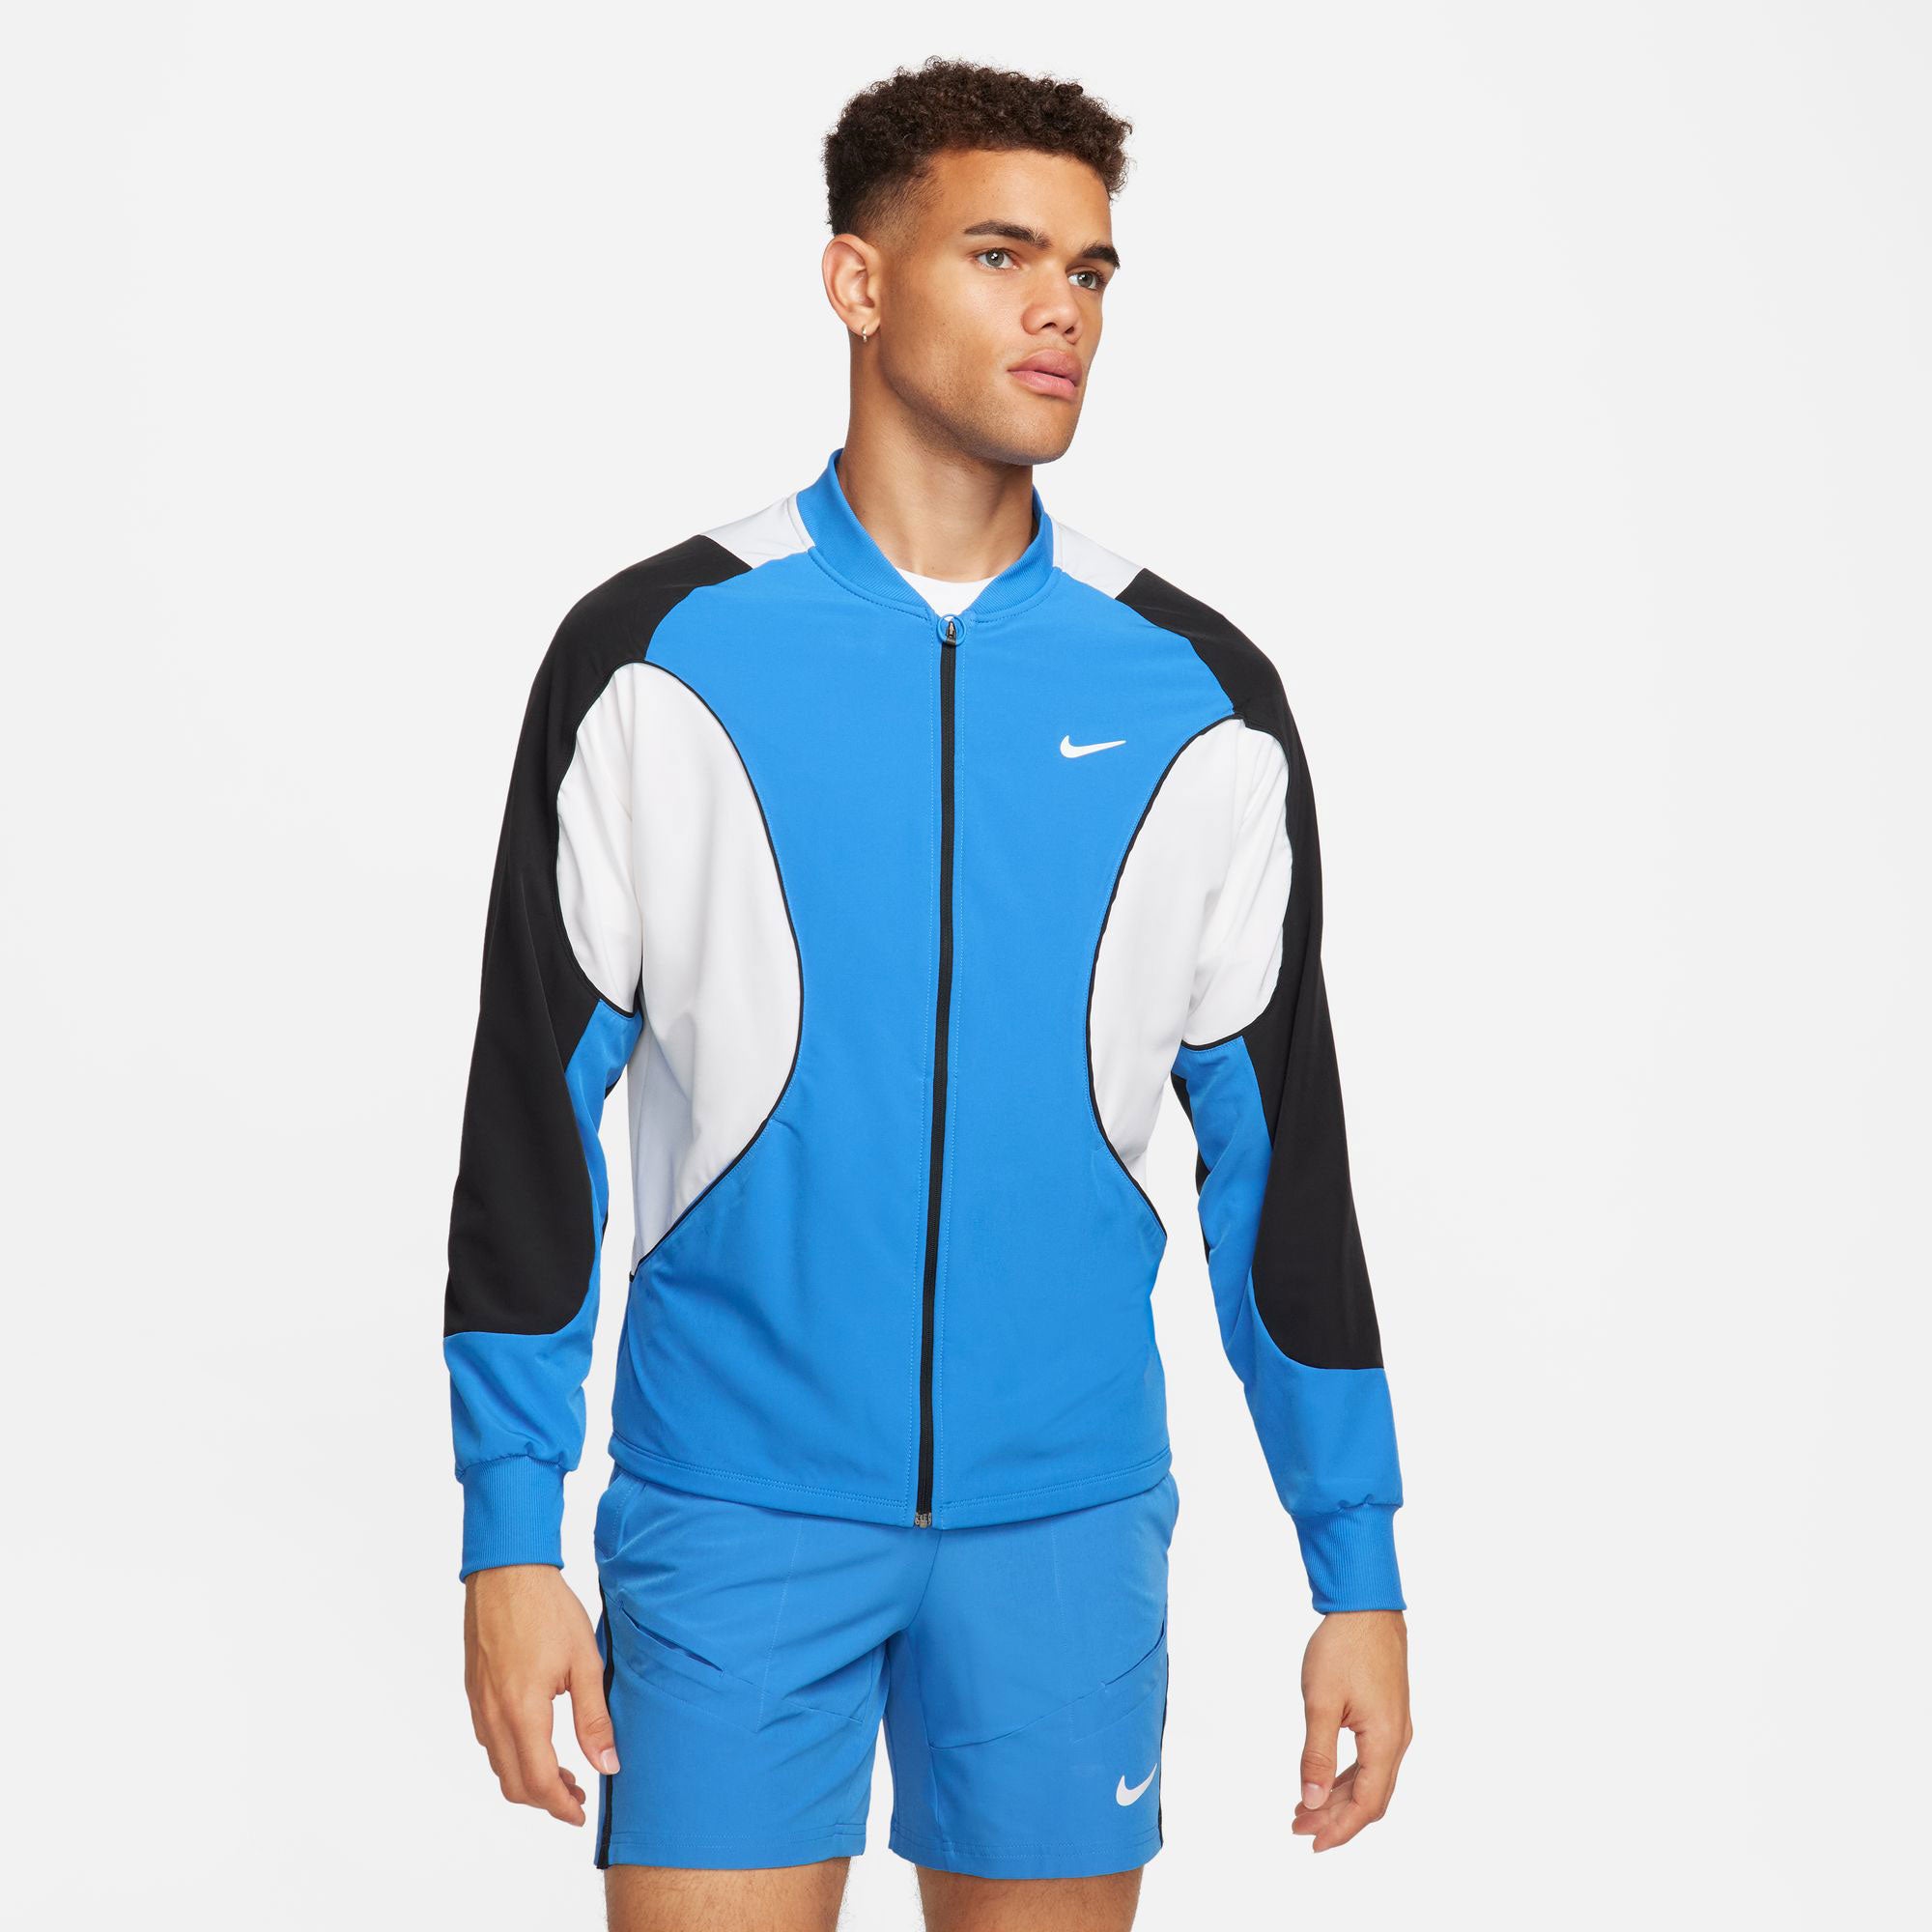 NikeCourt Advantage Men's Dri-FIT Tennis Jacket - Blue (1)